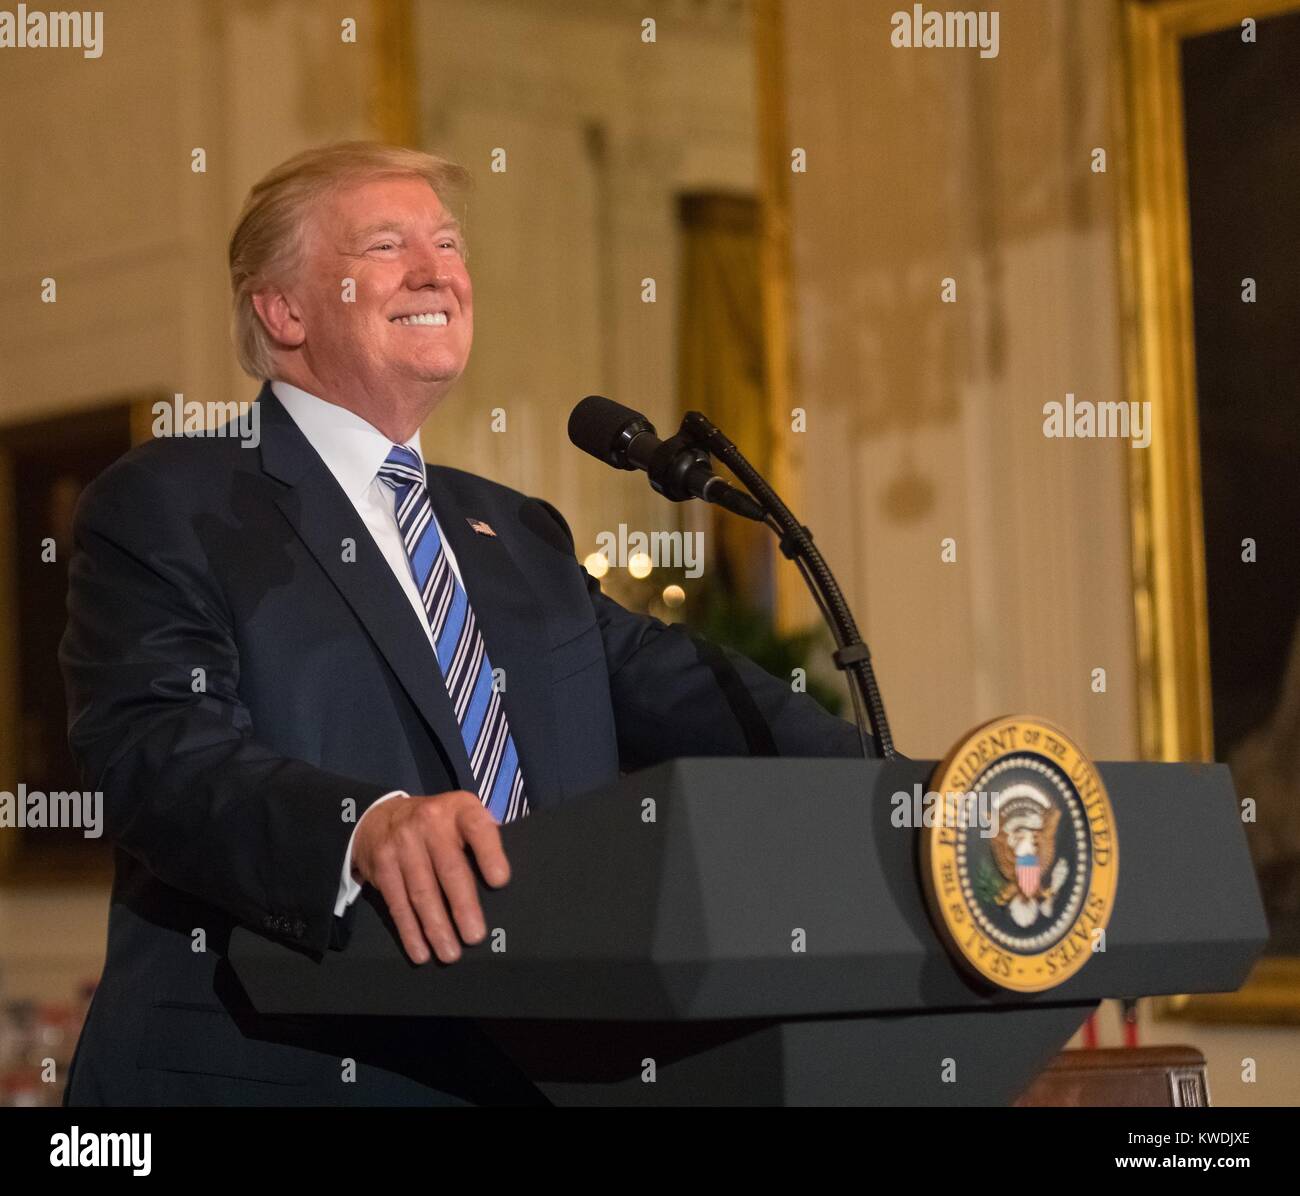 Le président Donald Trump prend la parole à la Maison Blanche Made in America Showcase, le 17 juillet 2017 (BSLOC   2017 19 10) Banque D'Images